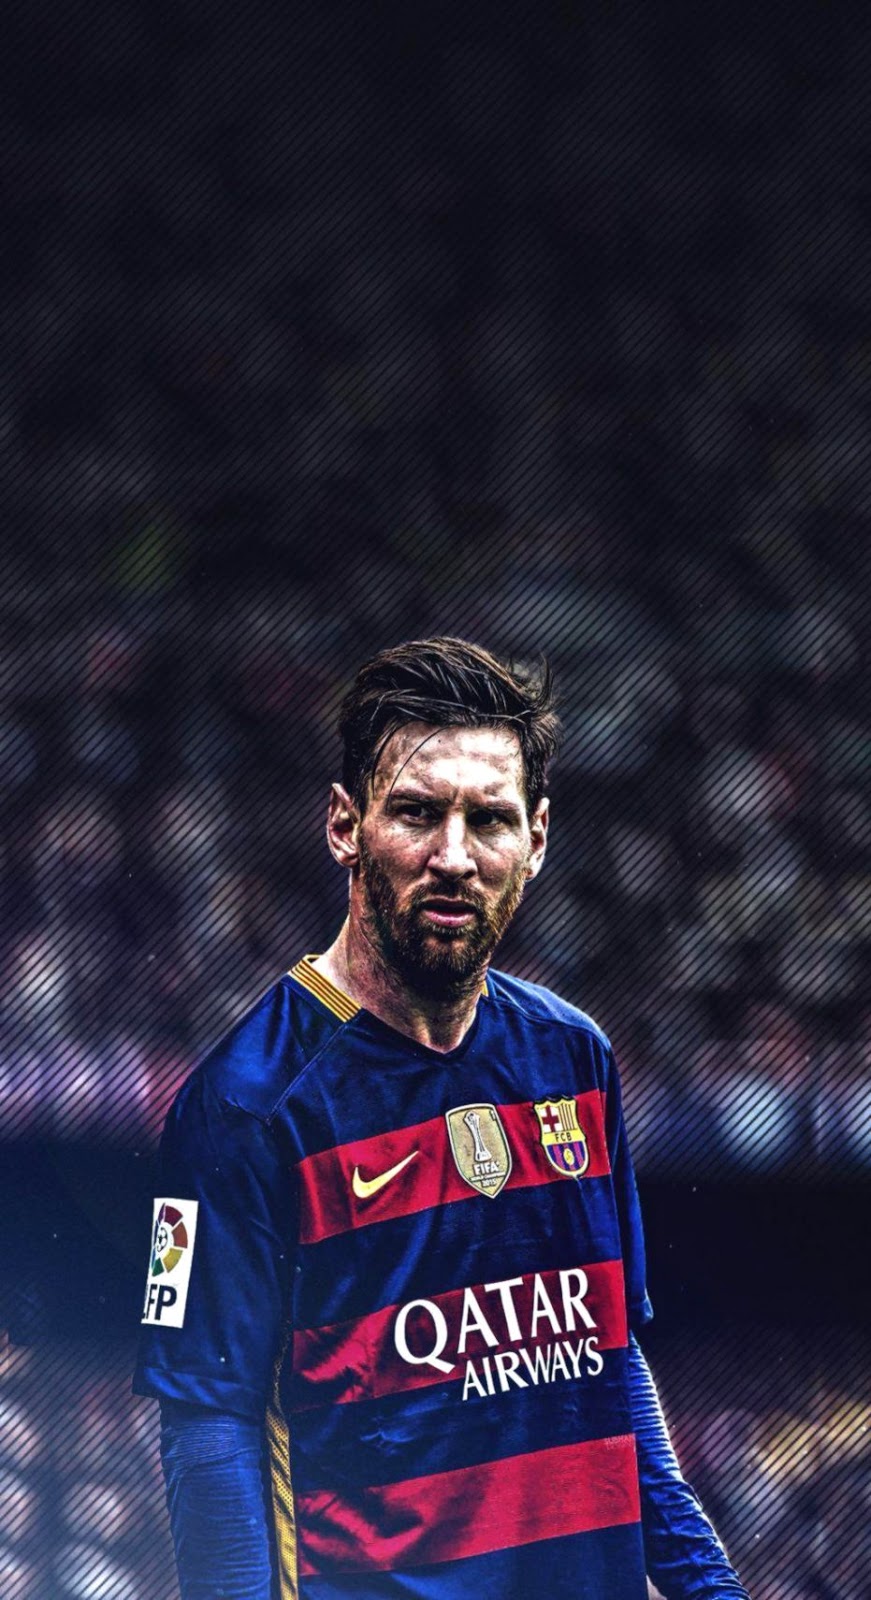 25+] Messi IPhone Wallpapers - WallpaperSafari